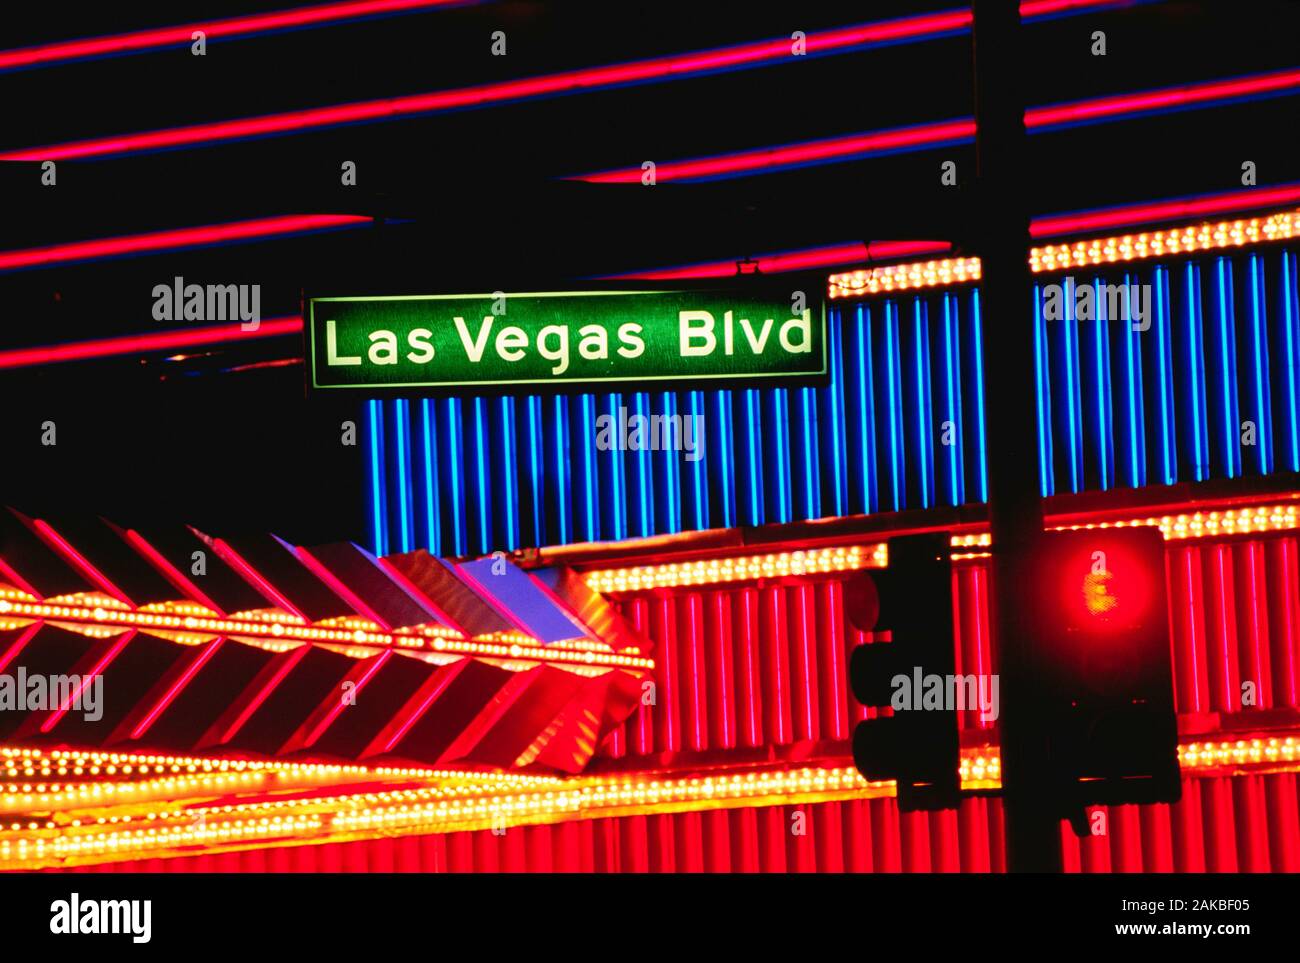 Las Vegas Blvd street sign at night, Las Vegas, Nevada, USA Stock Photo